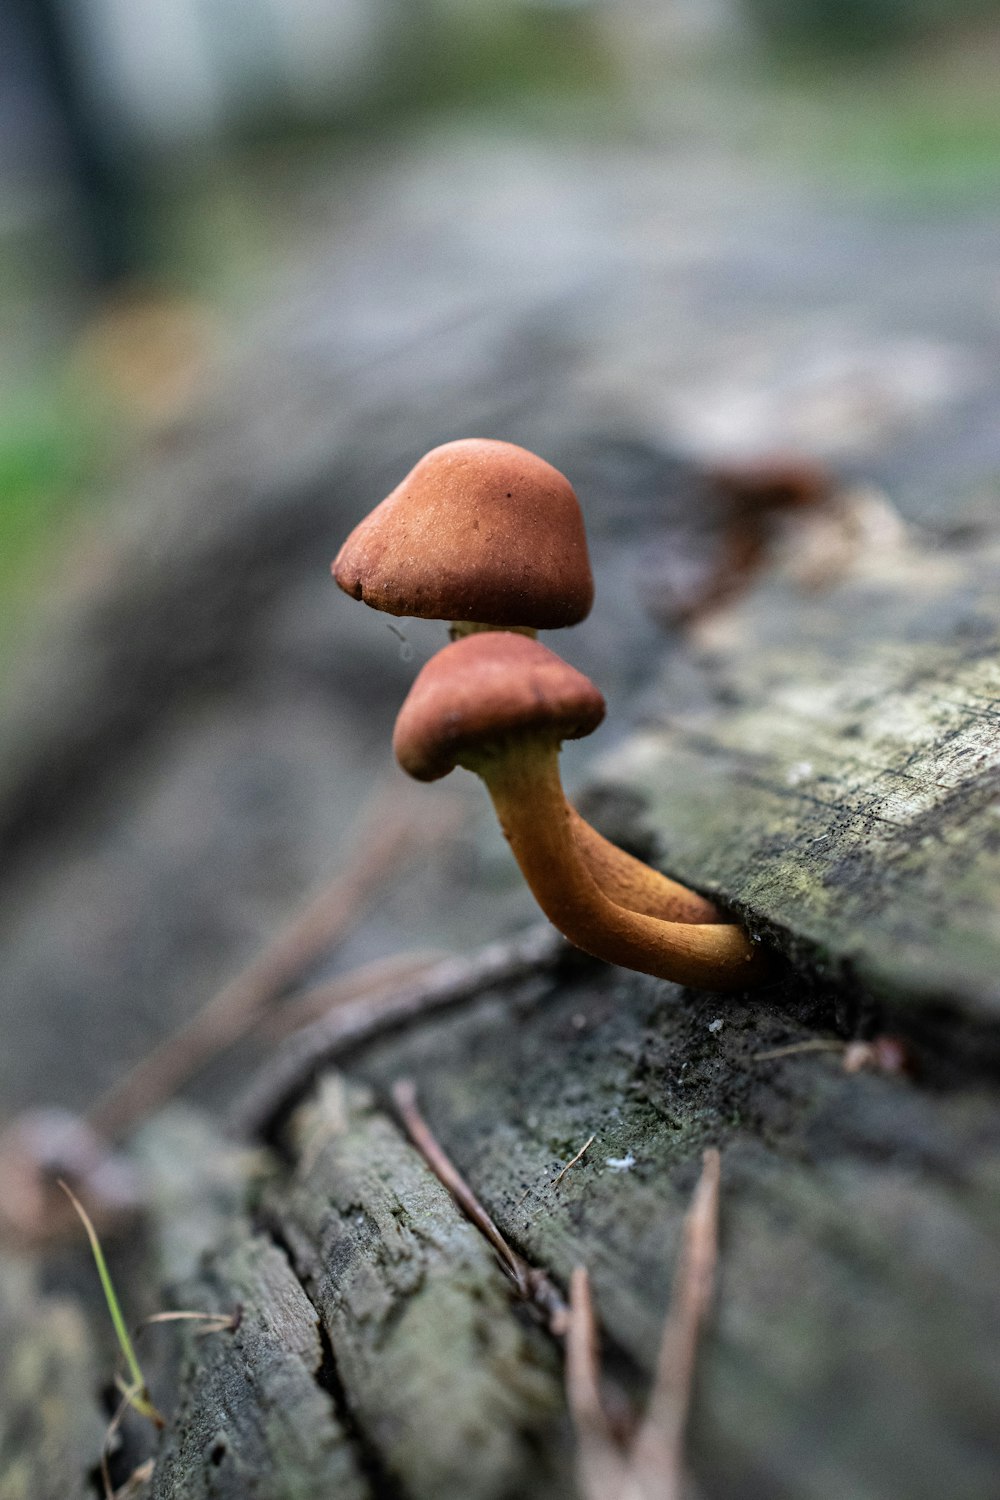 a close up of a mushroom on a log